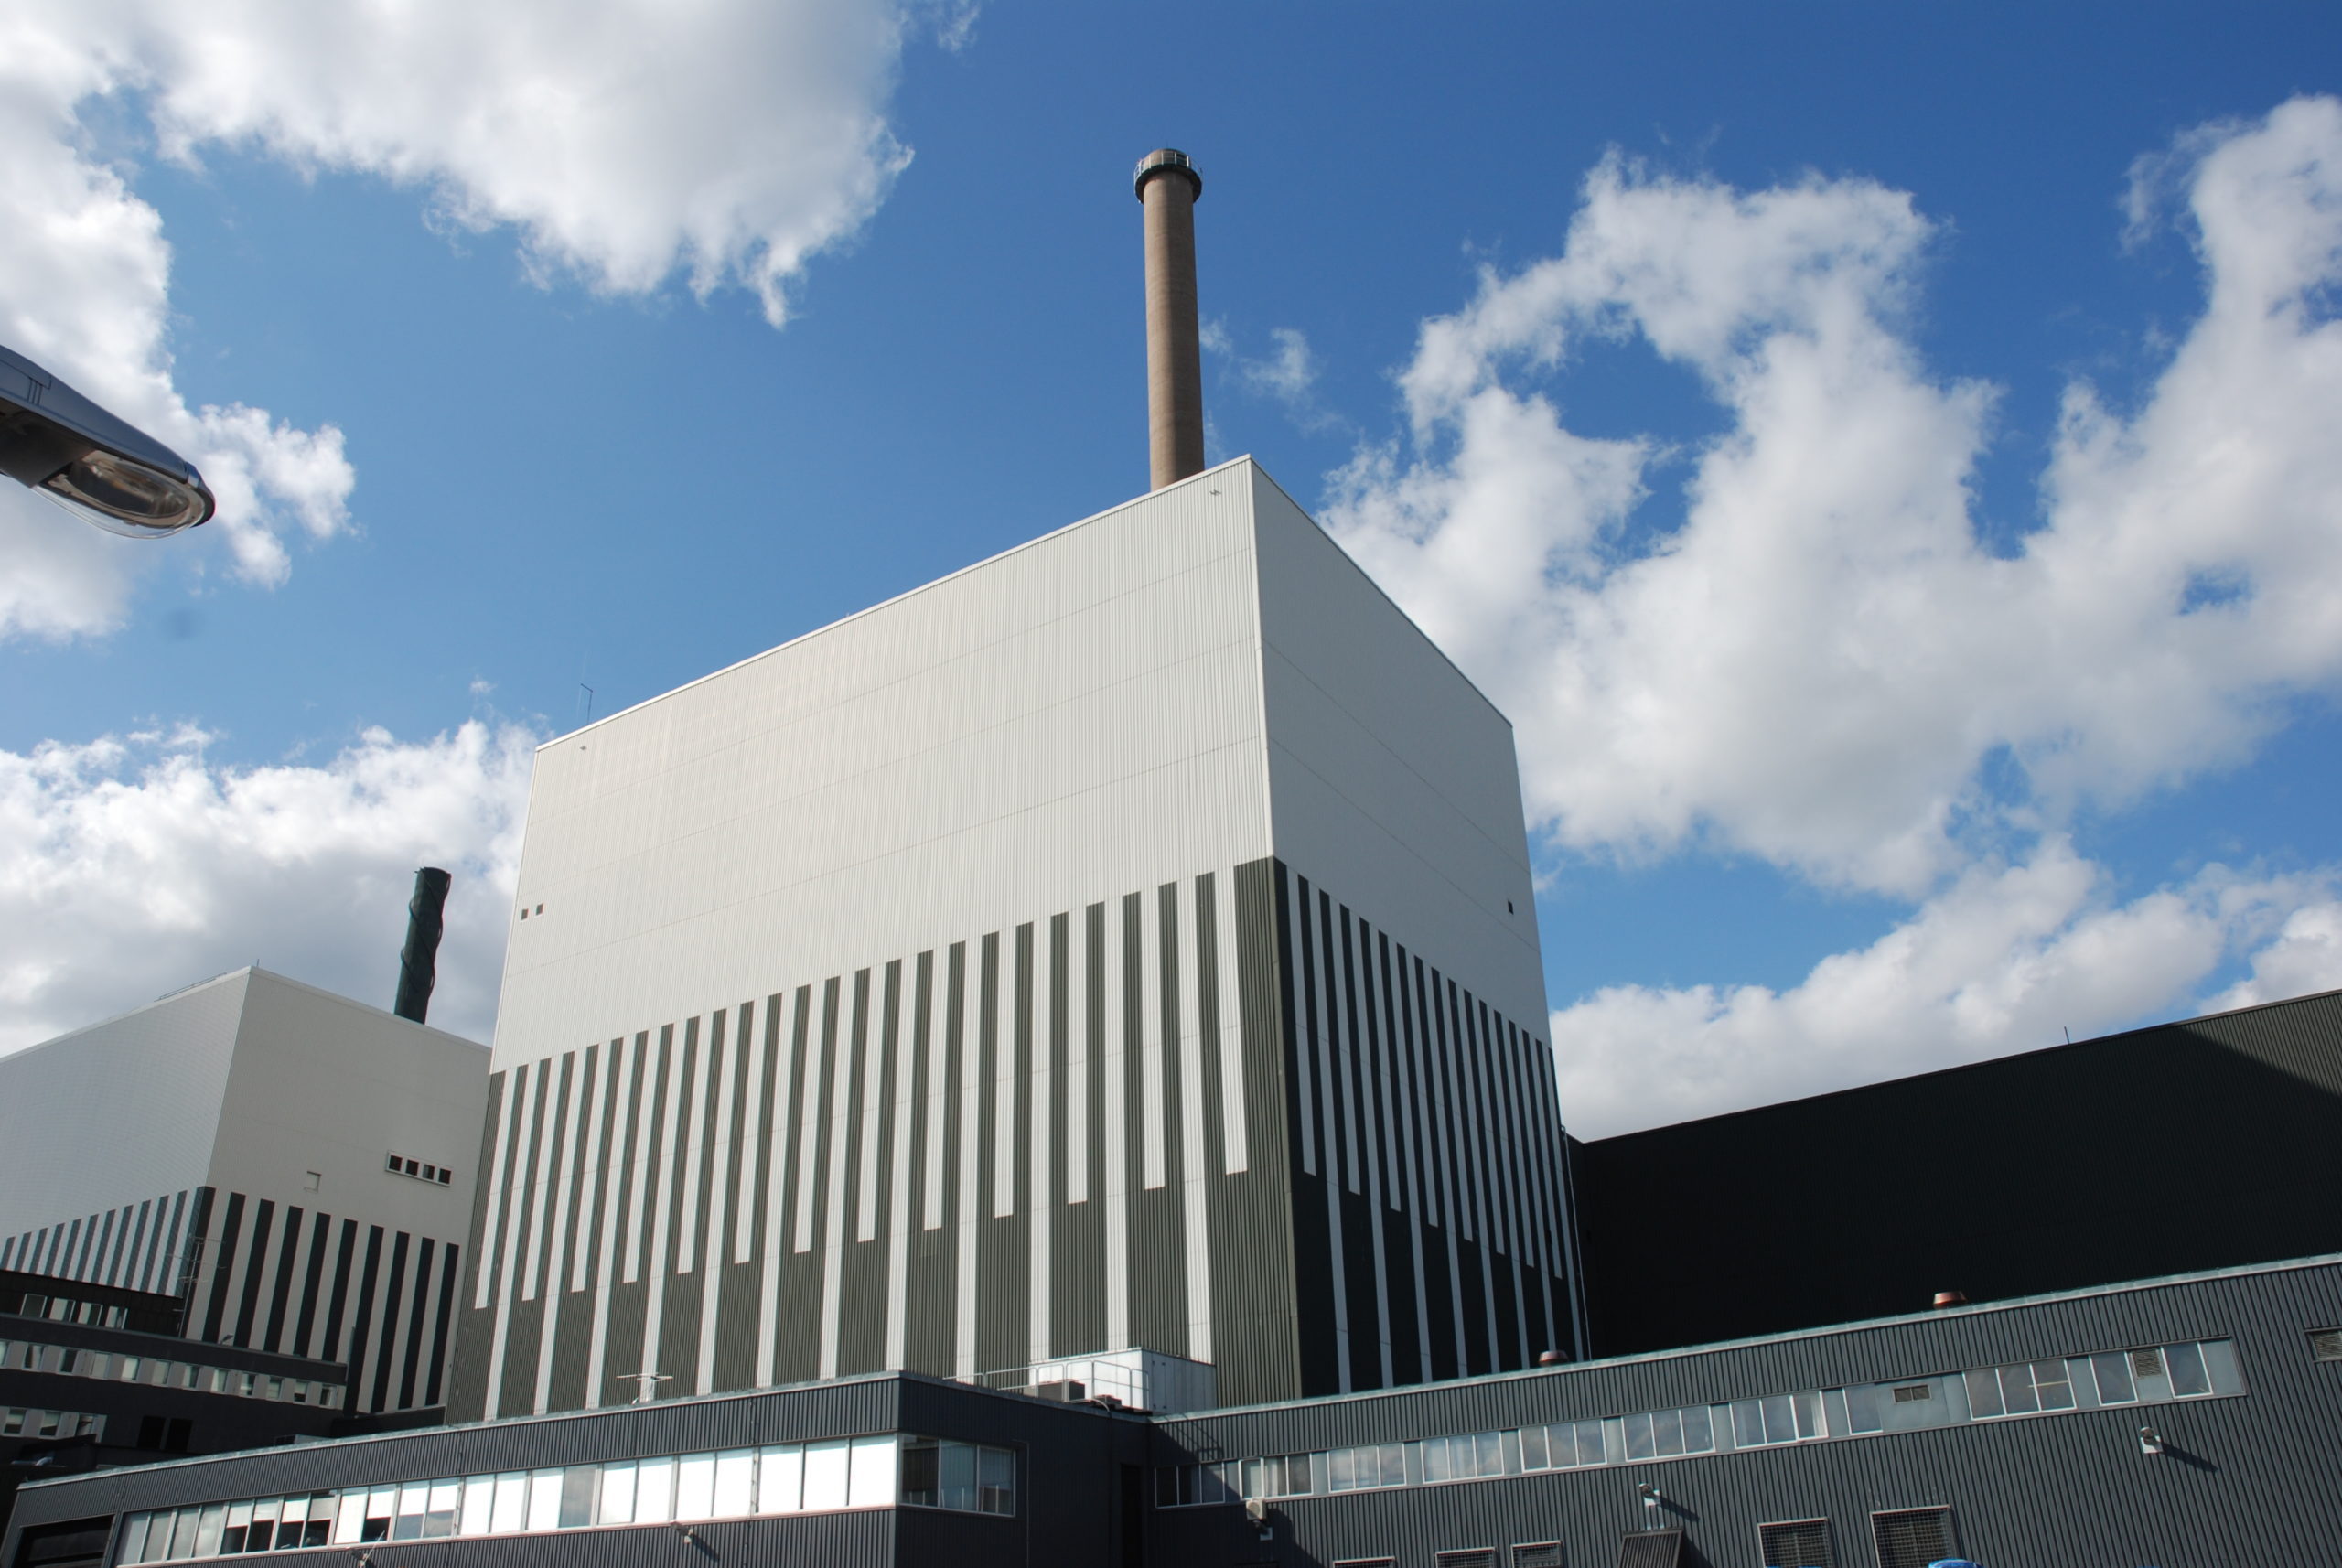 Suécia abre caminho para novas usinas nucleares. Na imagem: Usina nuclear Oskarshamn 2 de 638 MW na Suécia (Foto: Divulgação)